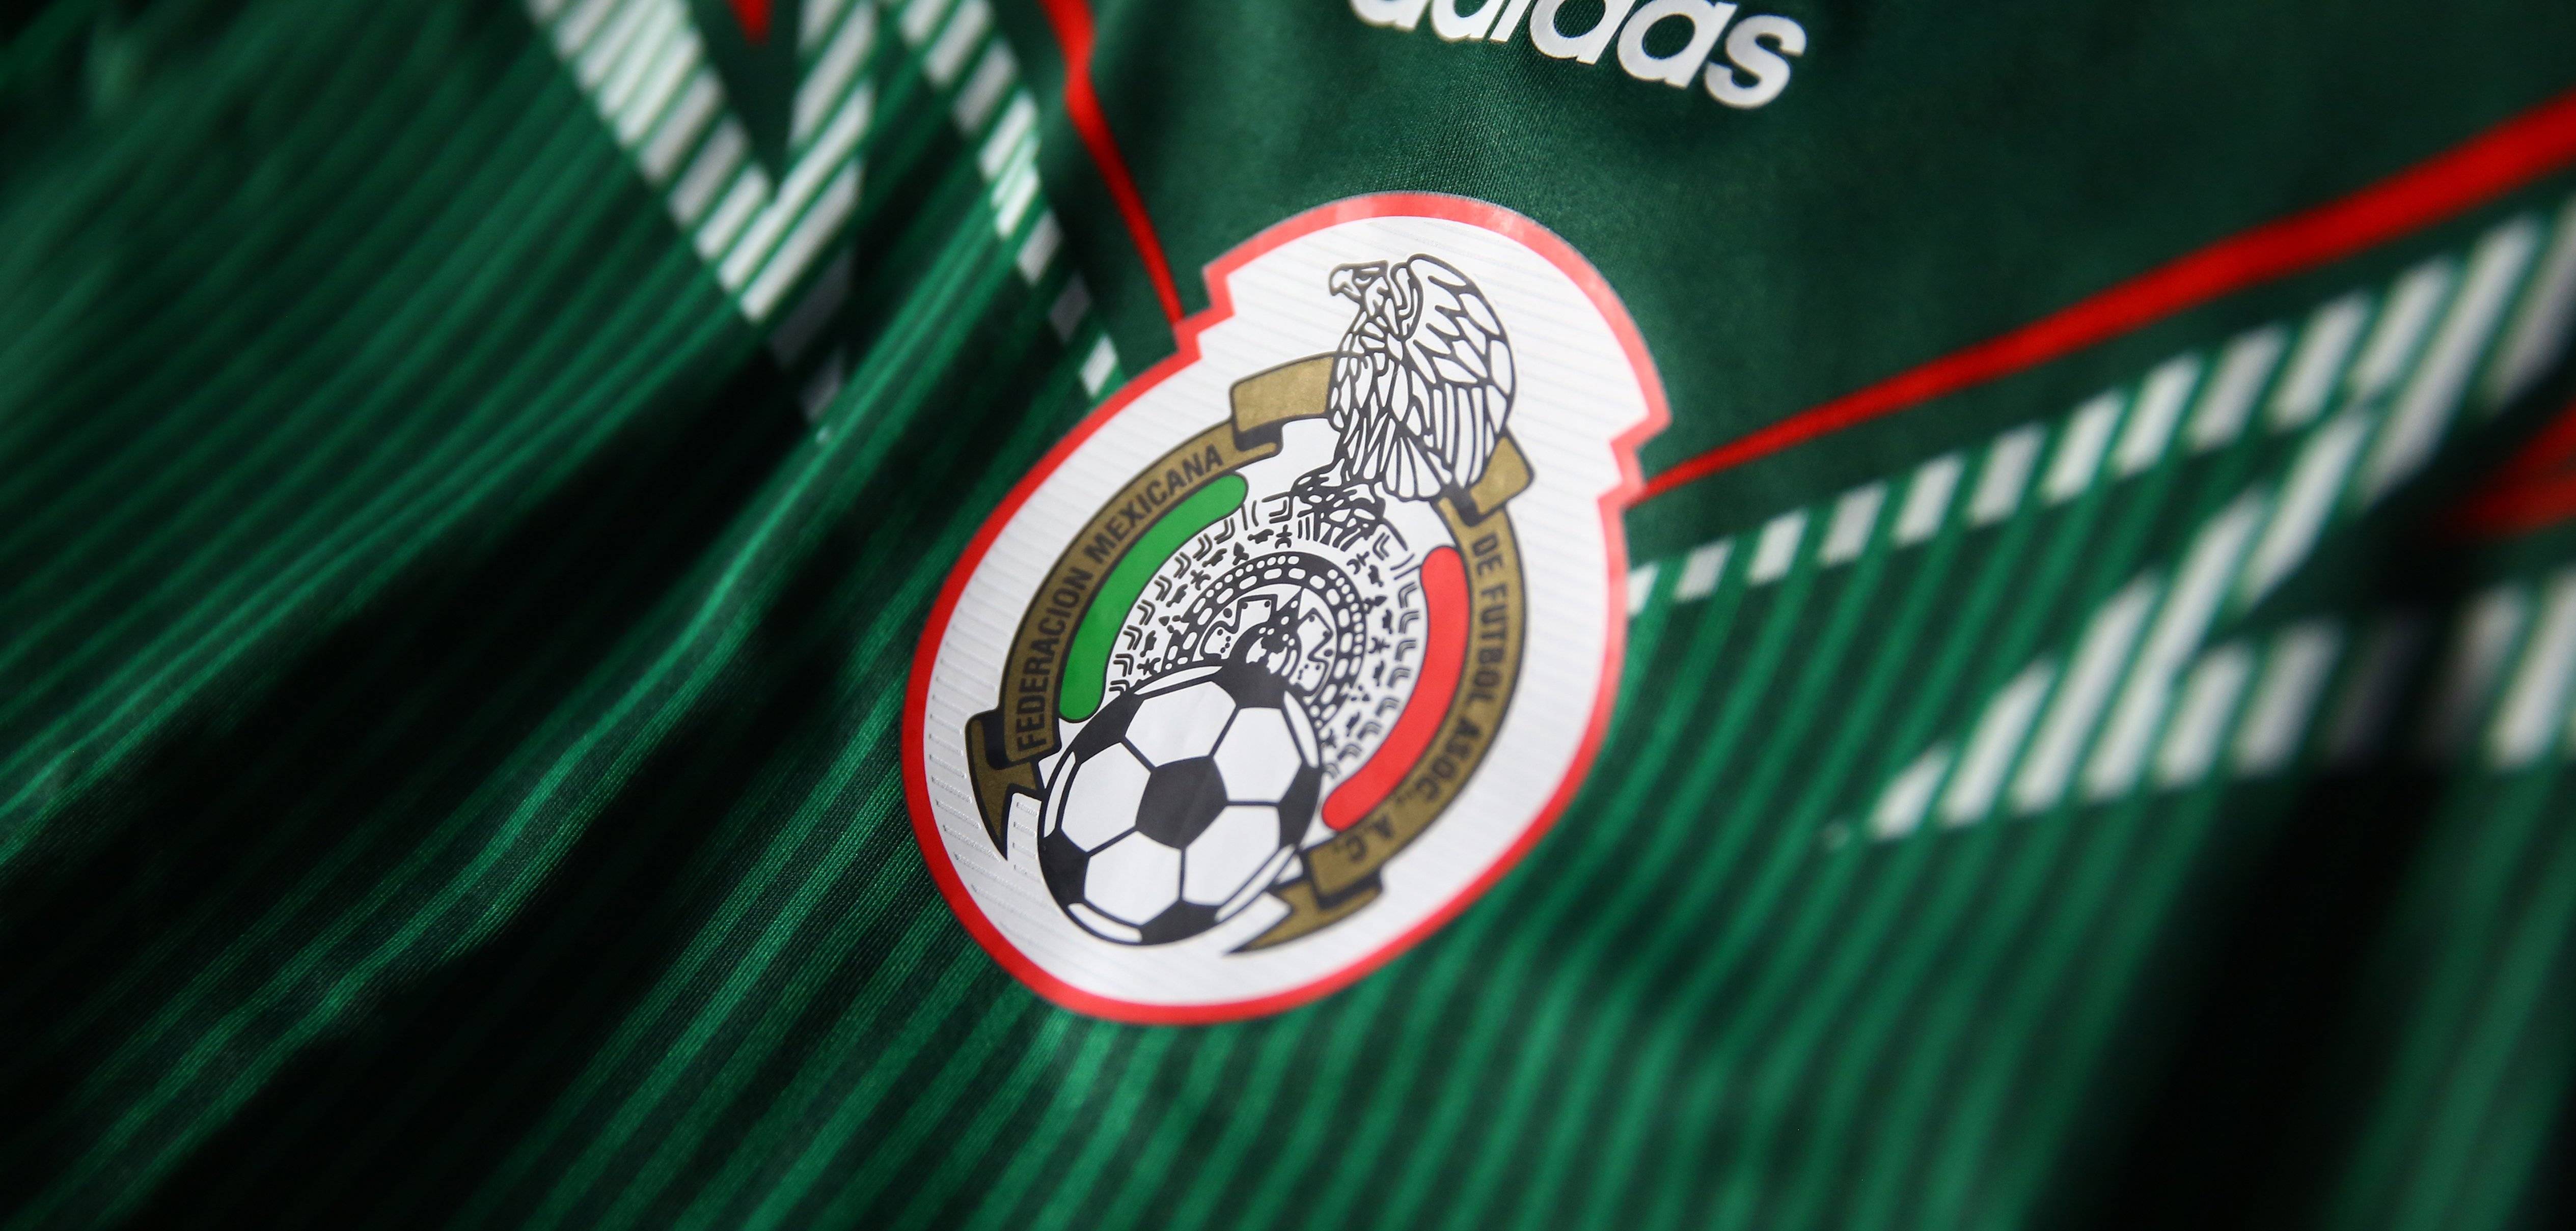 Mexico Wallpaper Soccer Mexico Soccer Team 2018 Wallpaper ·①